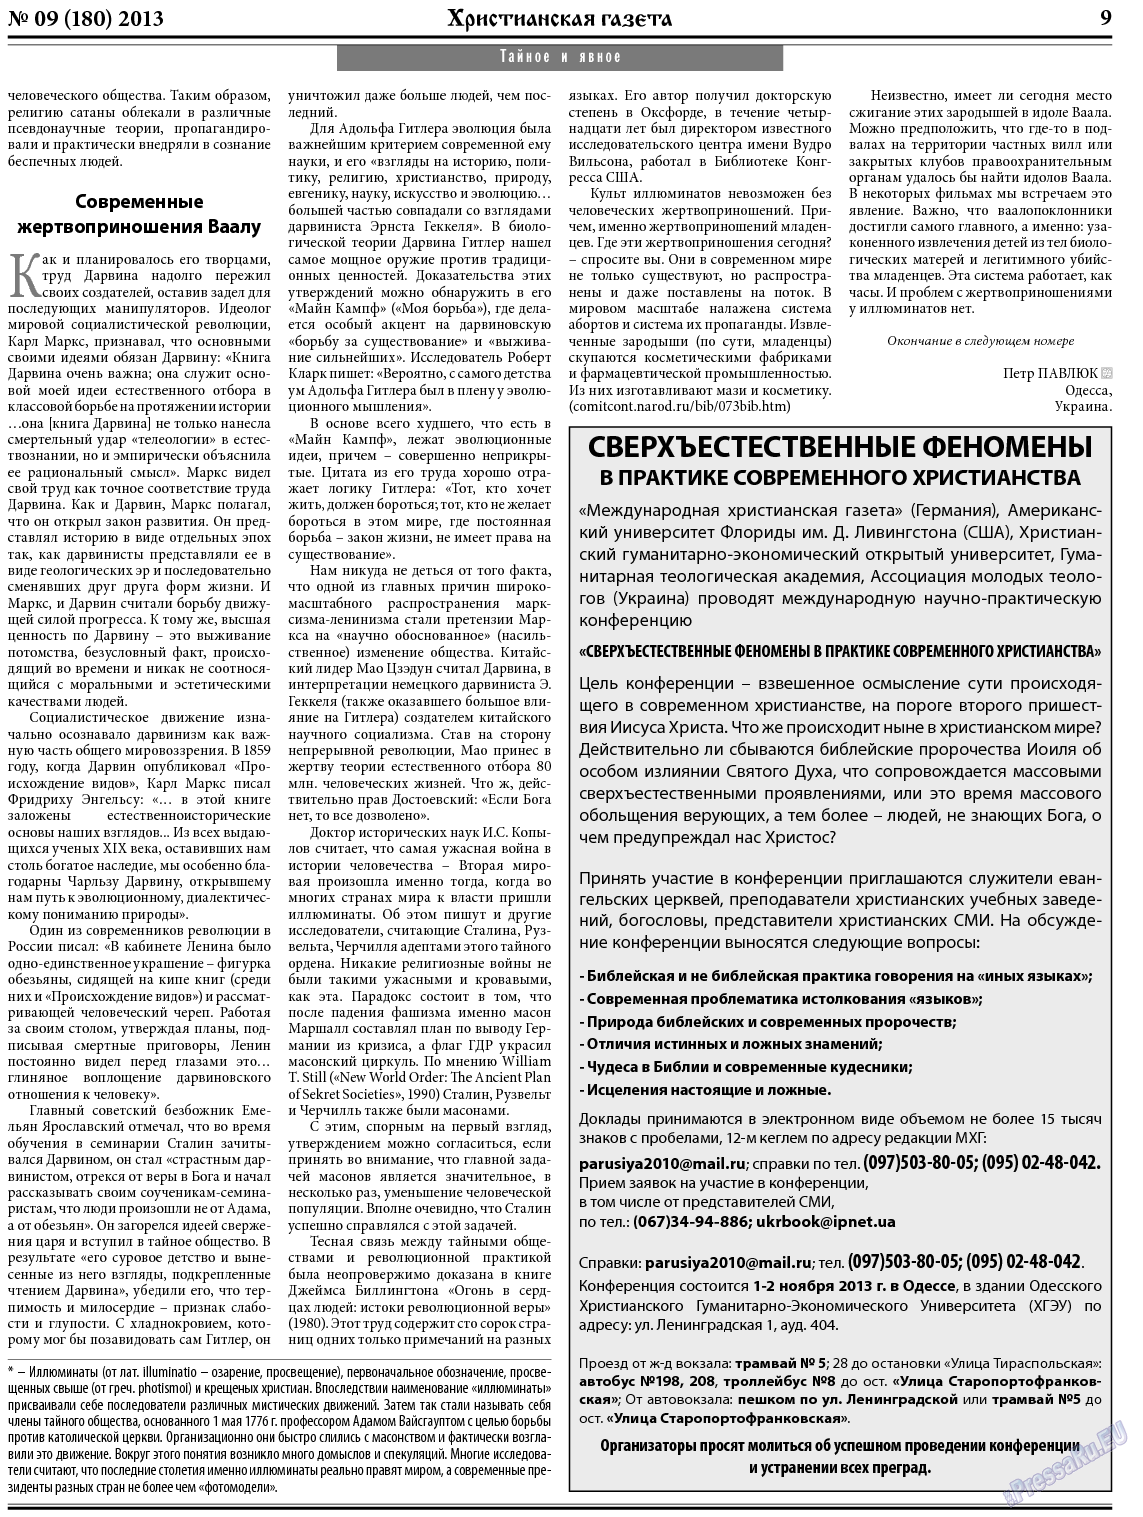 Христианская газета (газета). 2013 год, номер 9, стр. 9